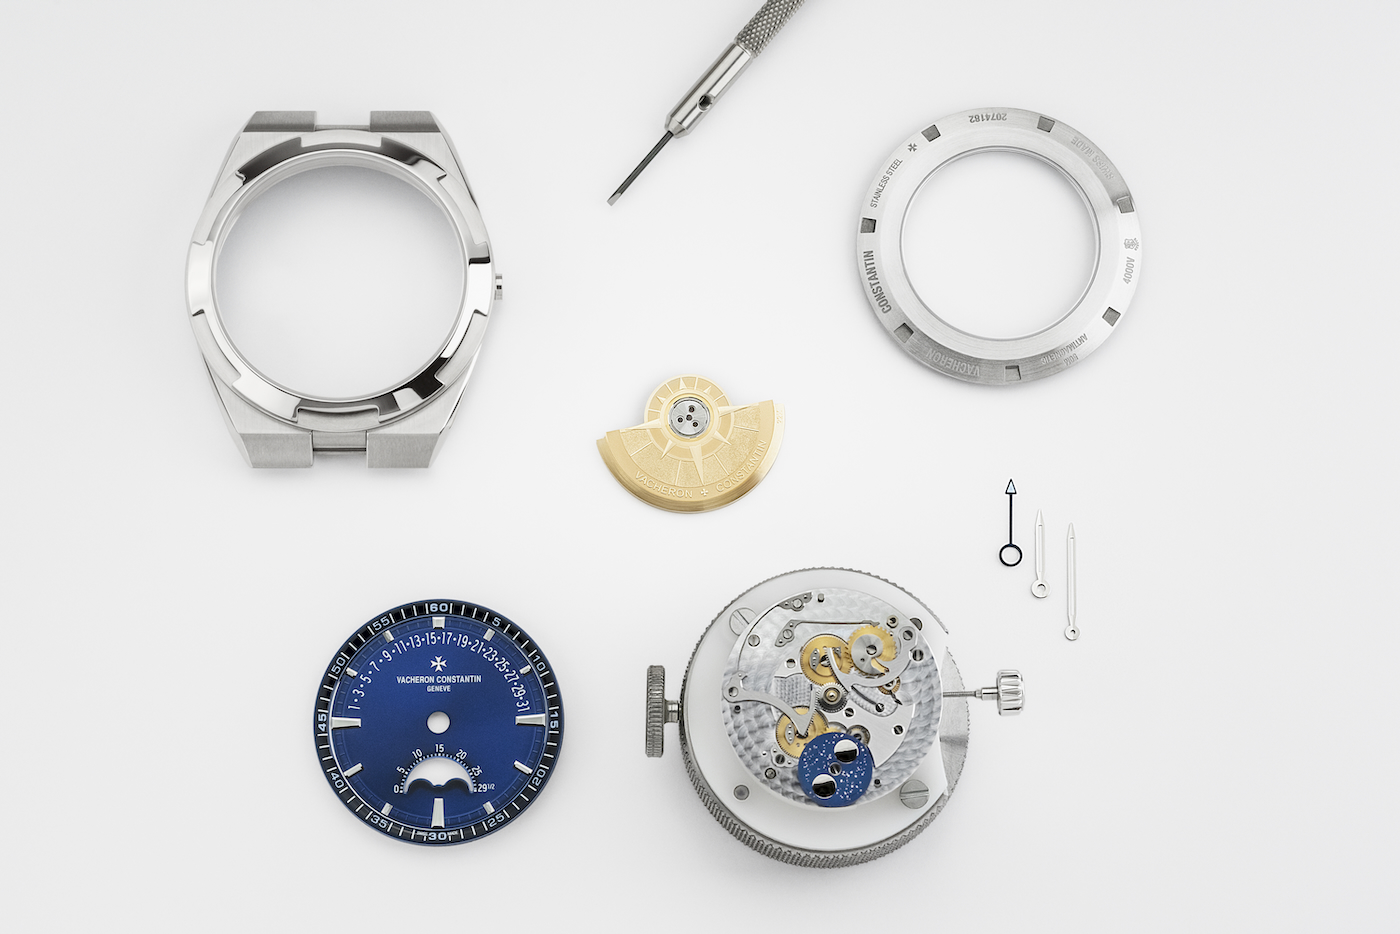 Vacheron Constantin ra mắt bộ sưu tập đồng hồ Overseas với Moonphase và Retrograde Date